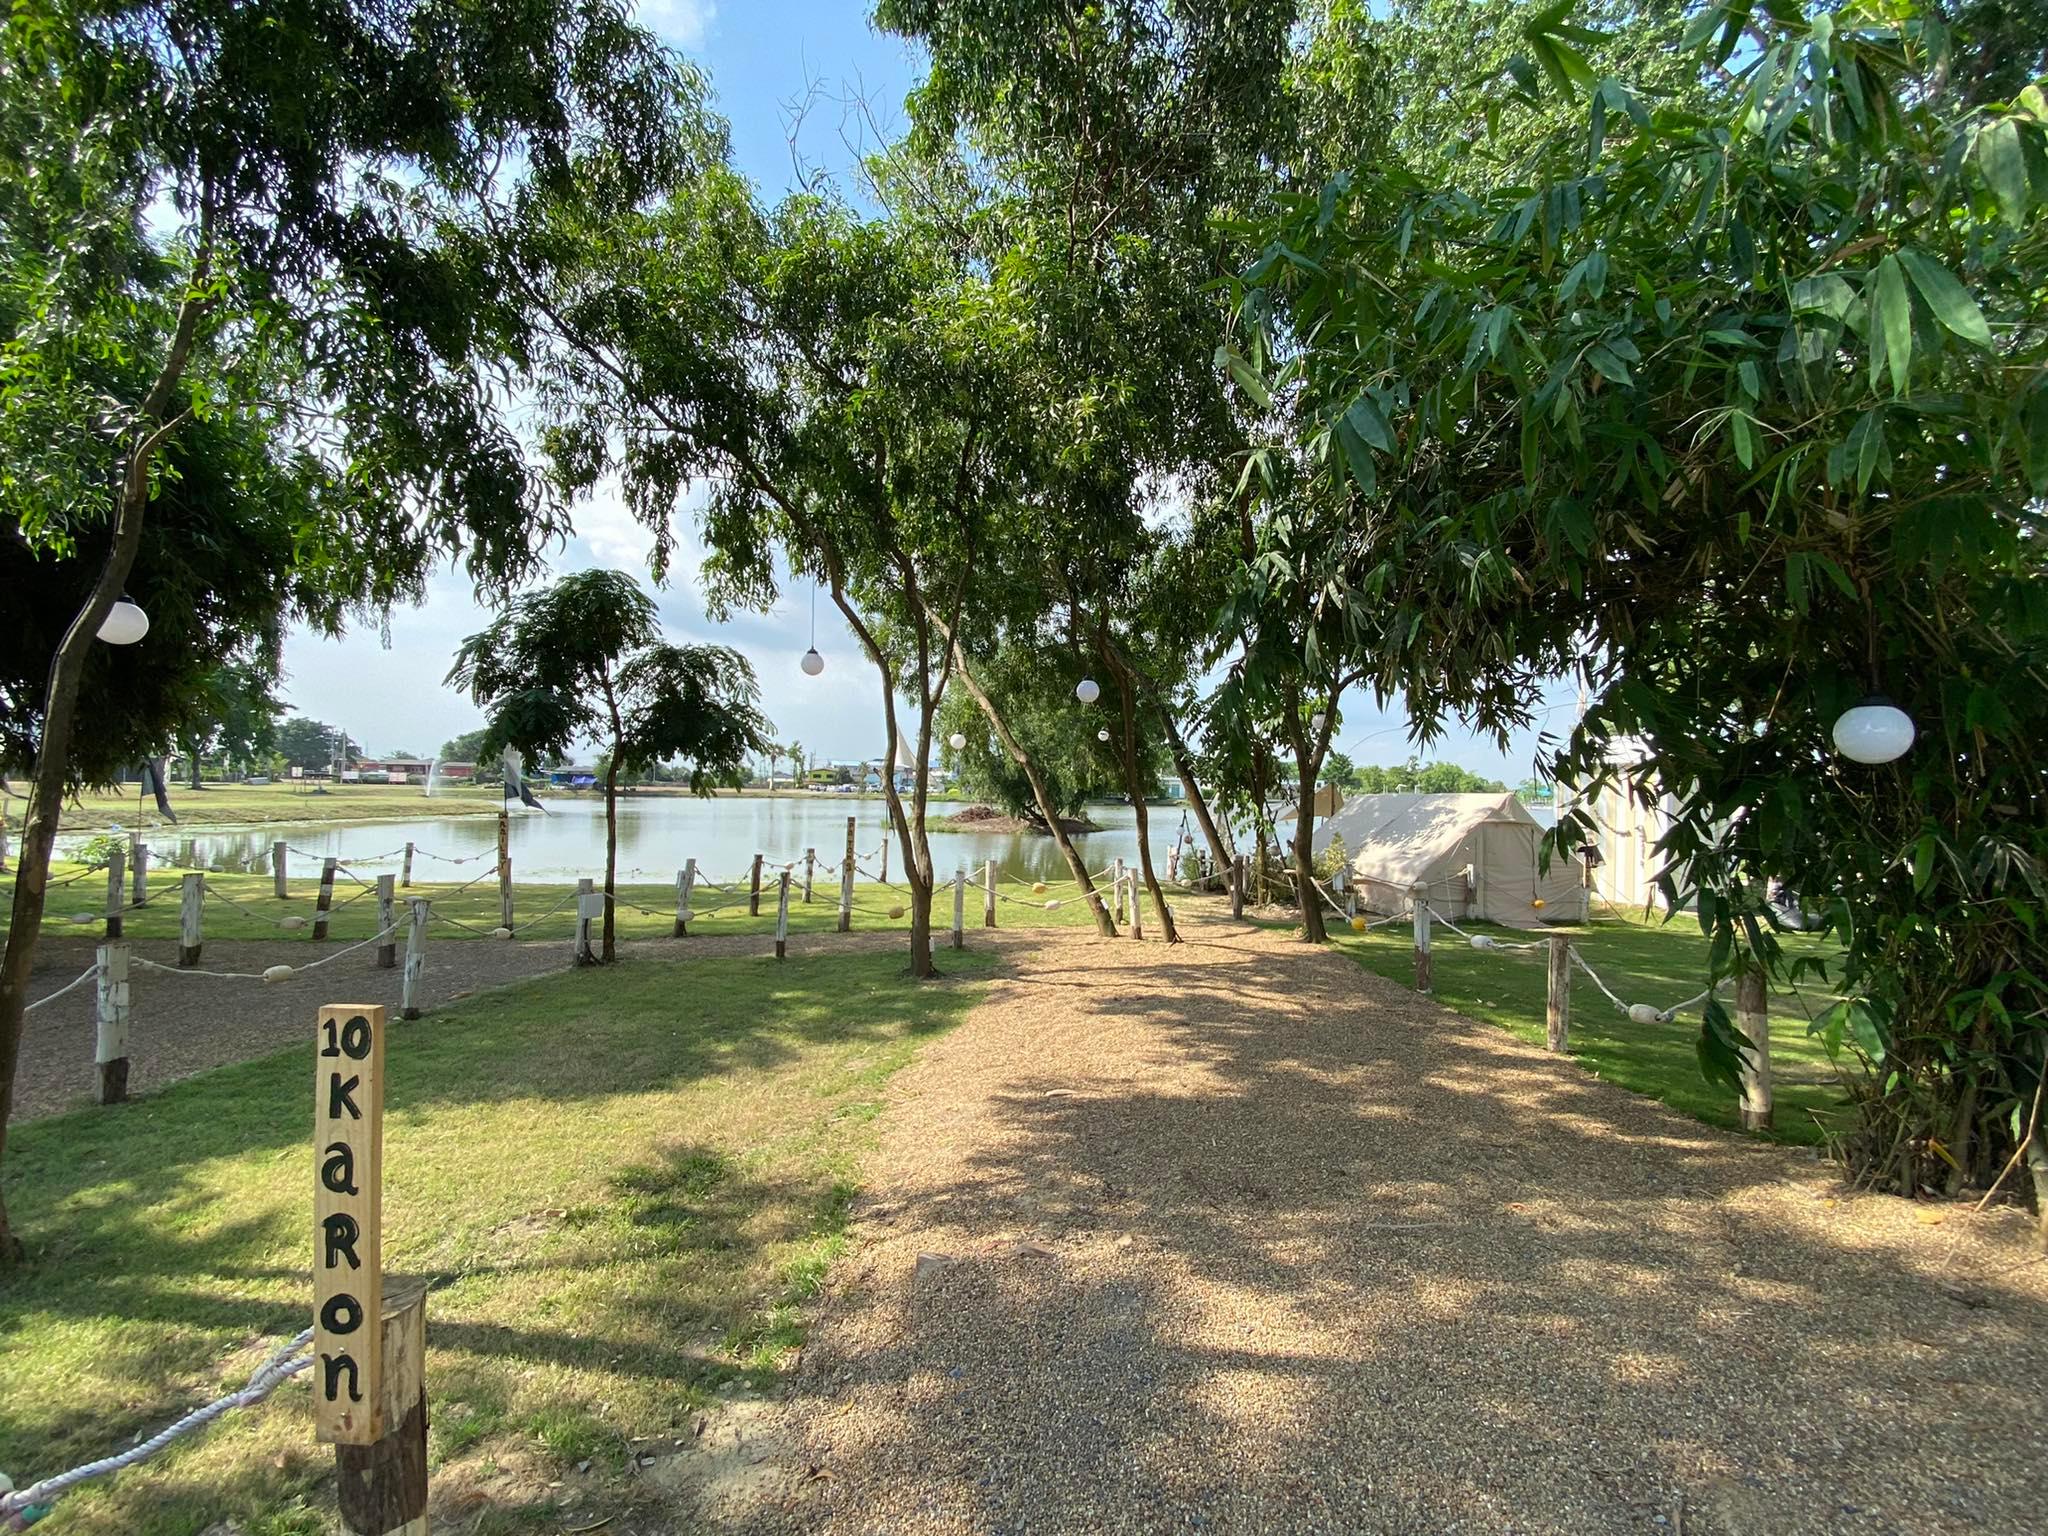 รูป James 500 City Camp Romklao Lagoon